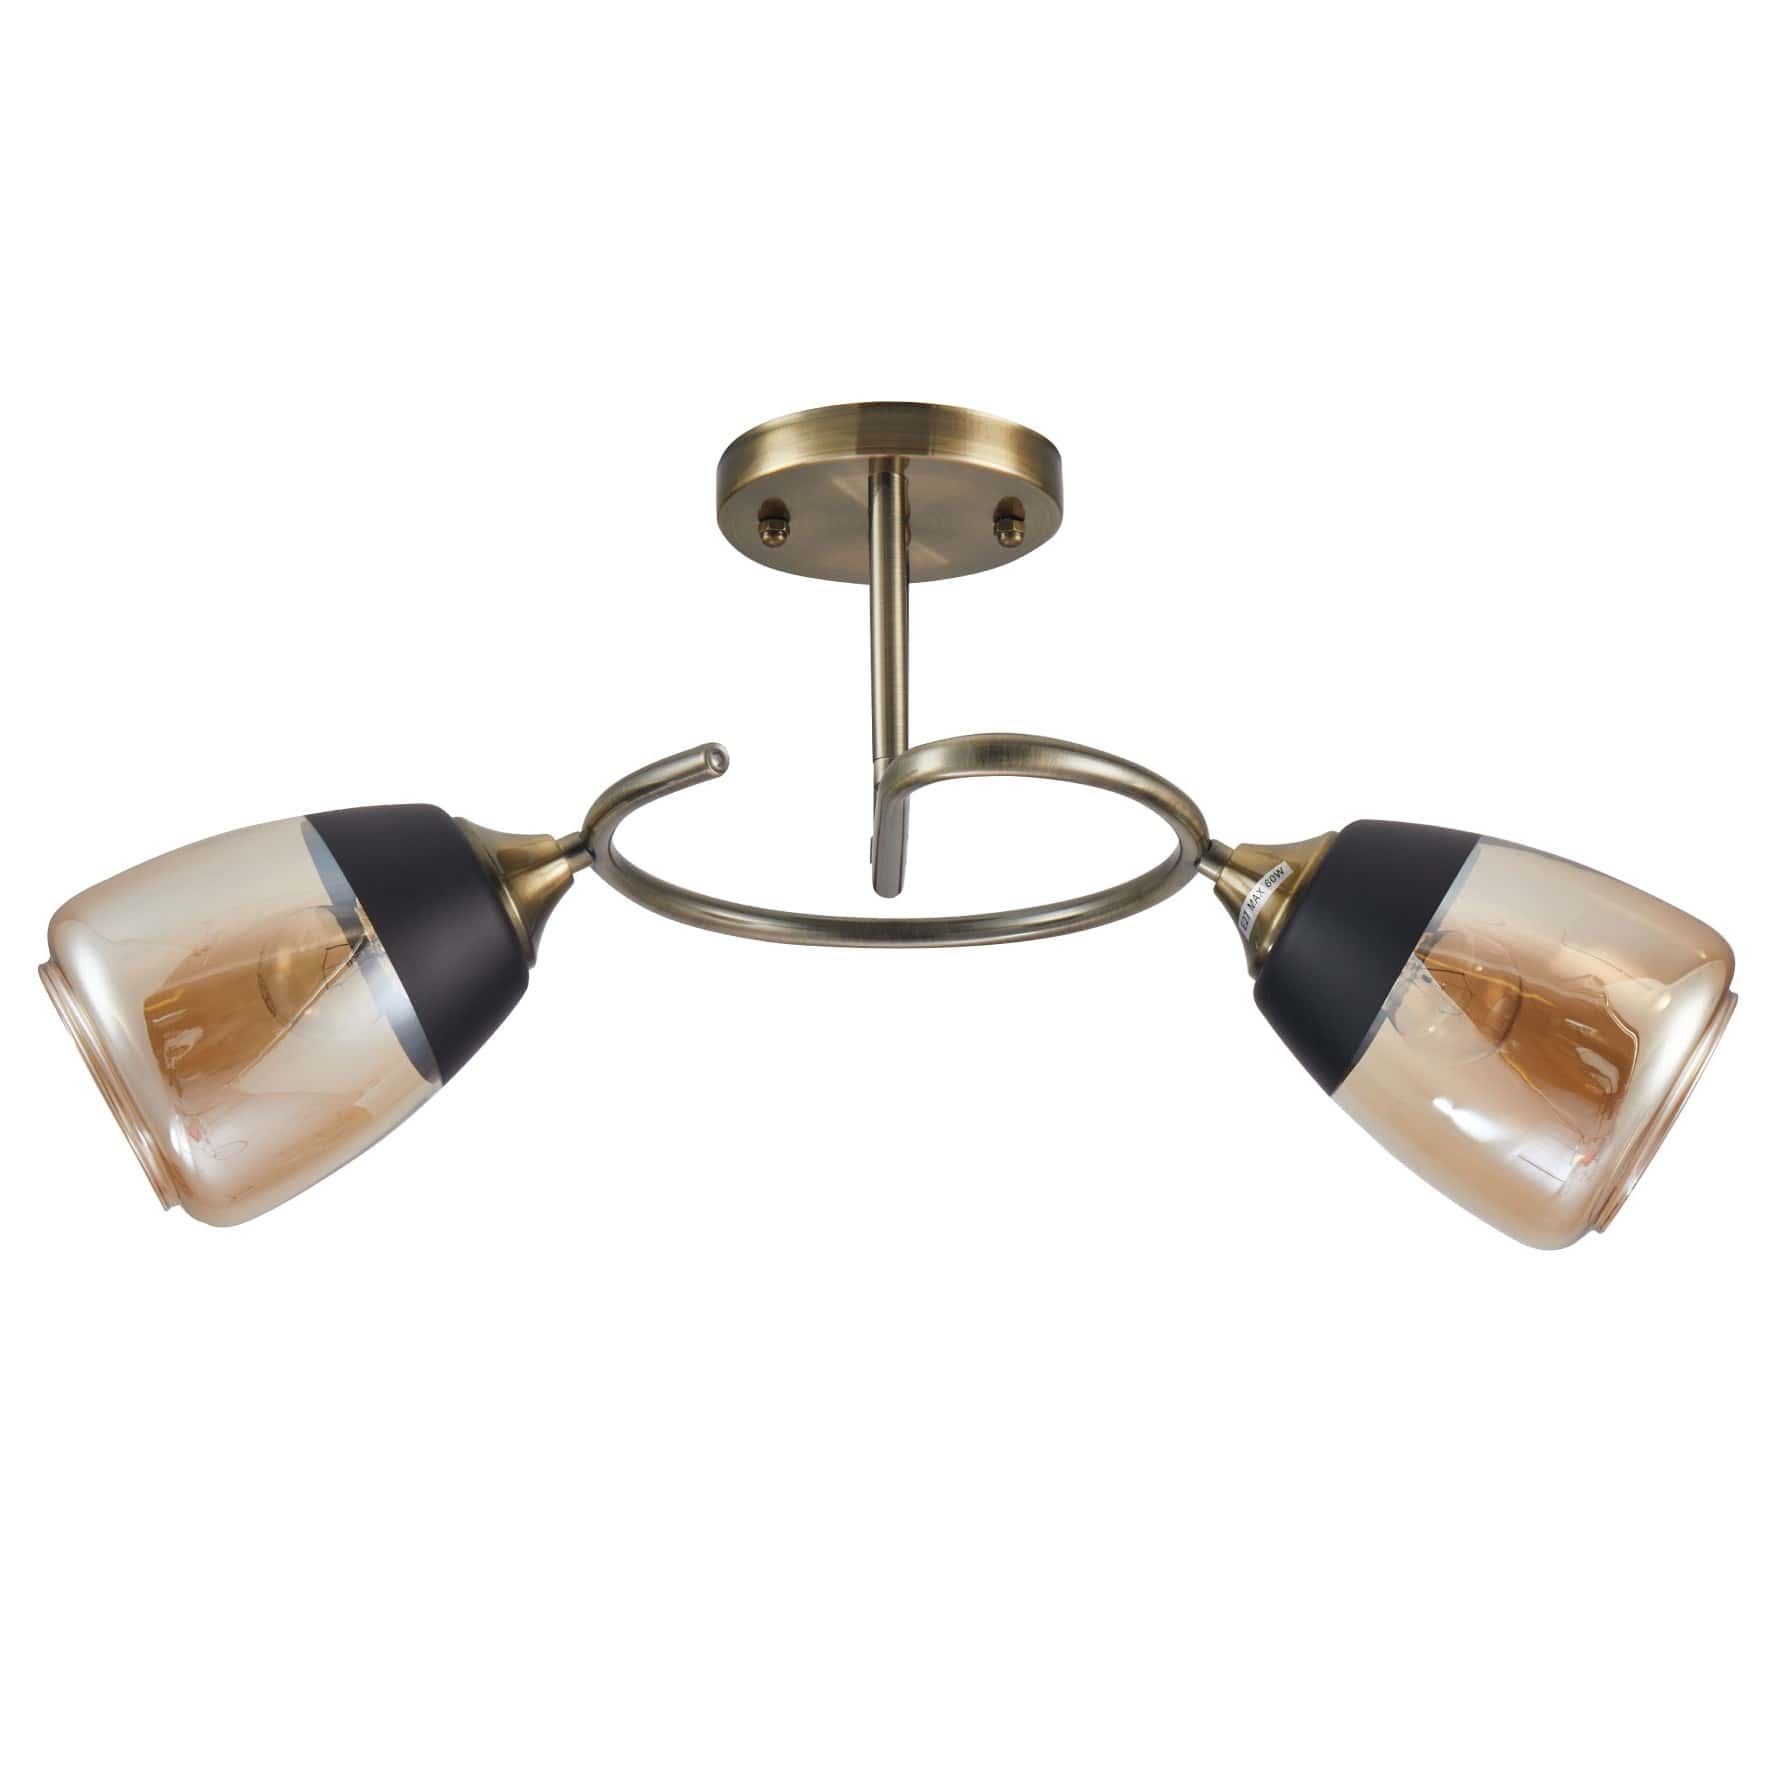 Main image of Amber Black Bell Glass Antique Brass Metal Spiral Semi Flush Ceiling Light | TEKLED 159-17156